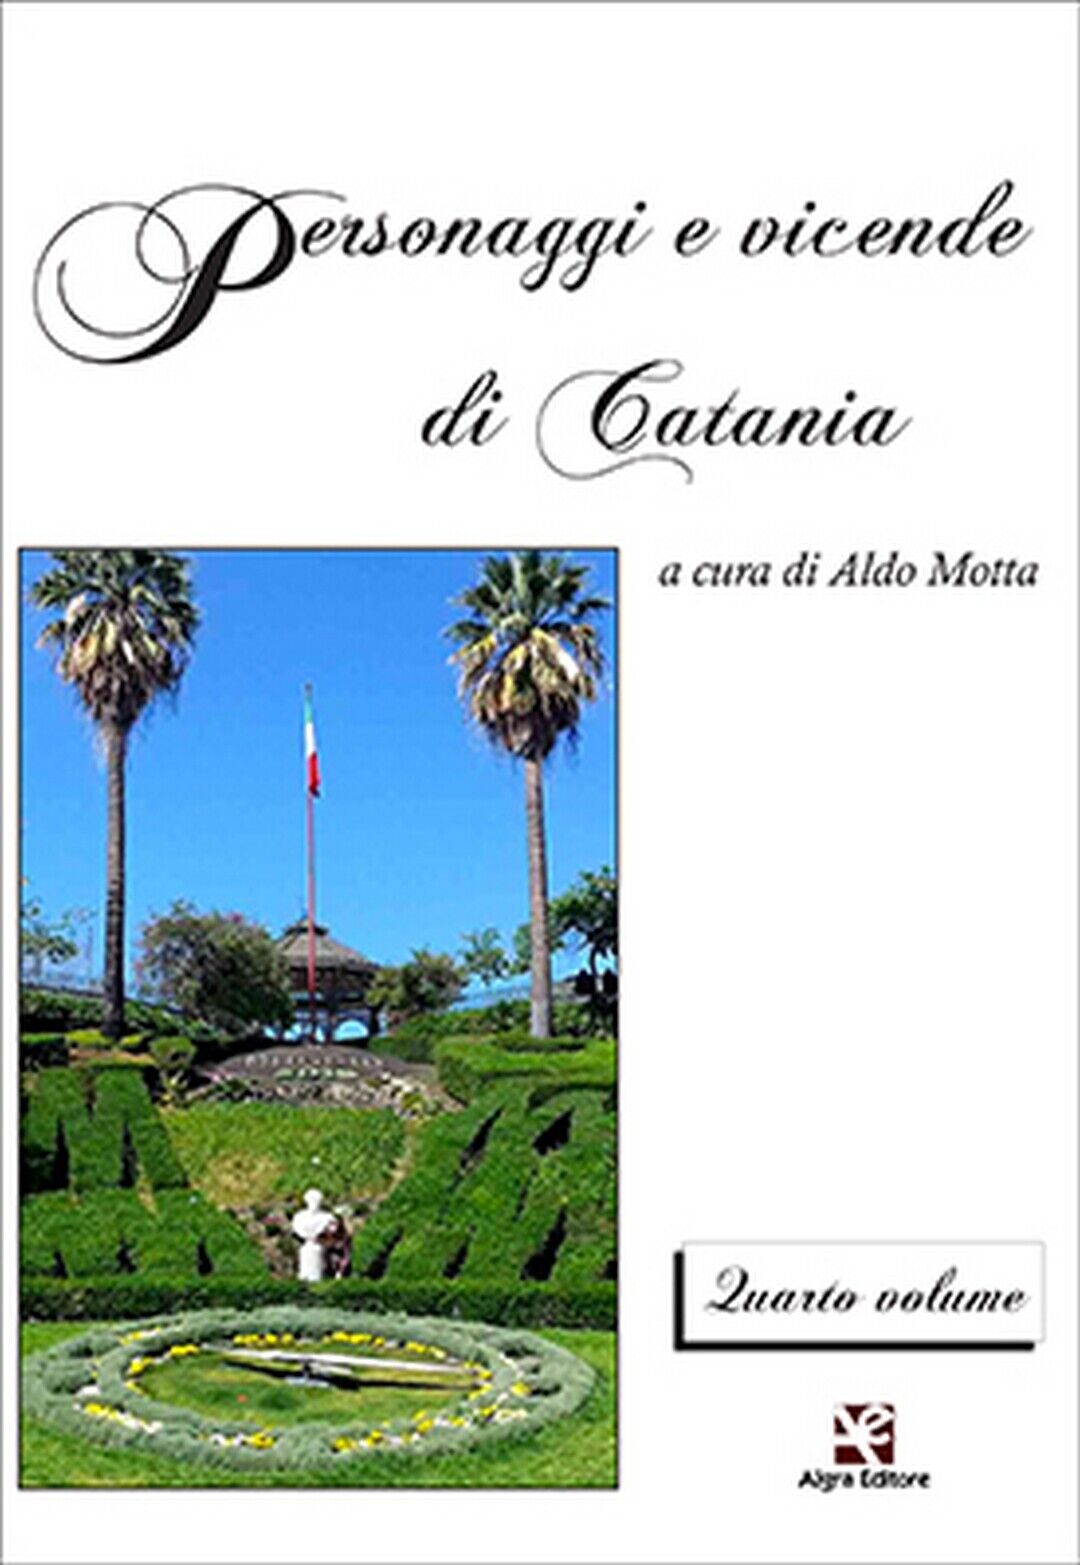 Personaggi e vicende di Catania. Quarto volume  di Aldo Motta,  Algra Editore